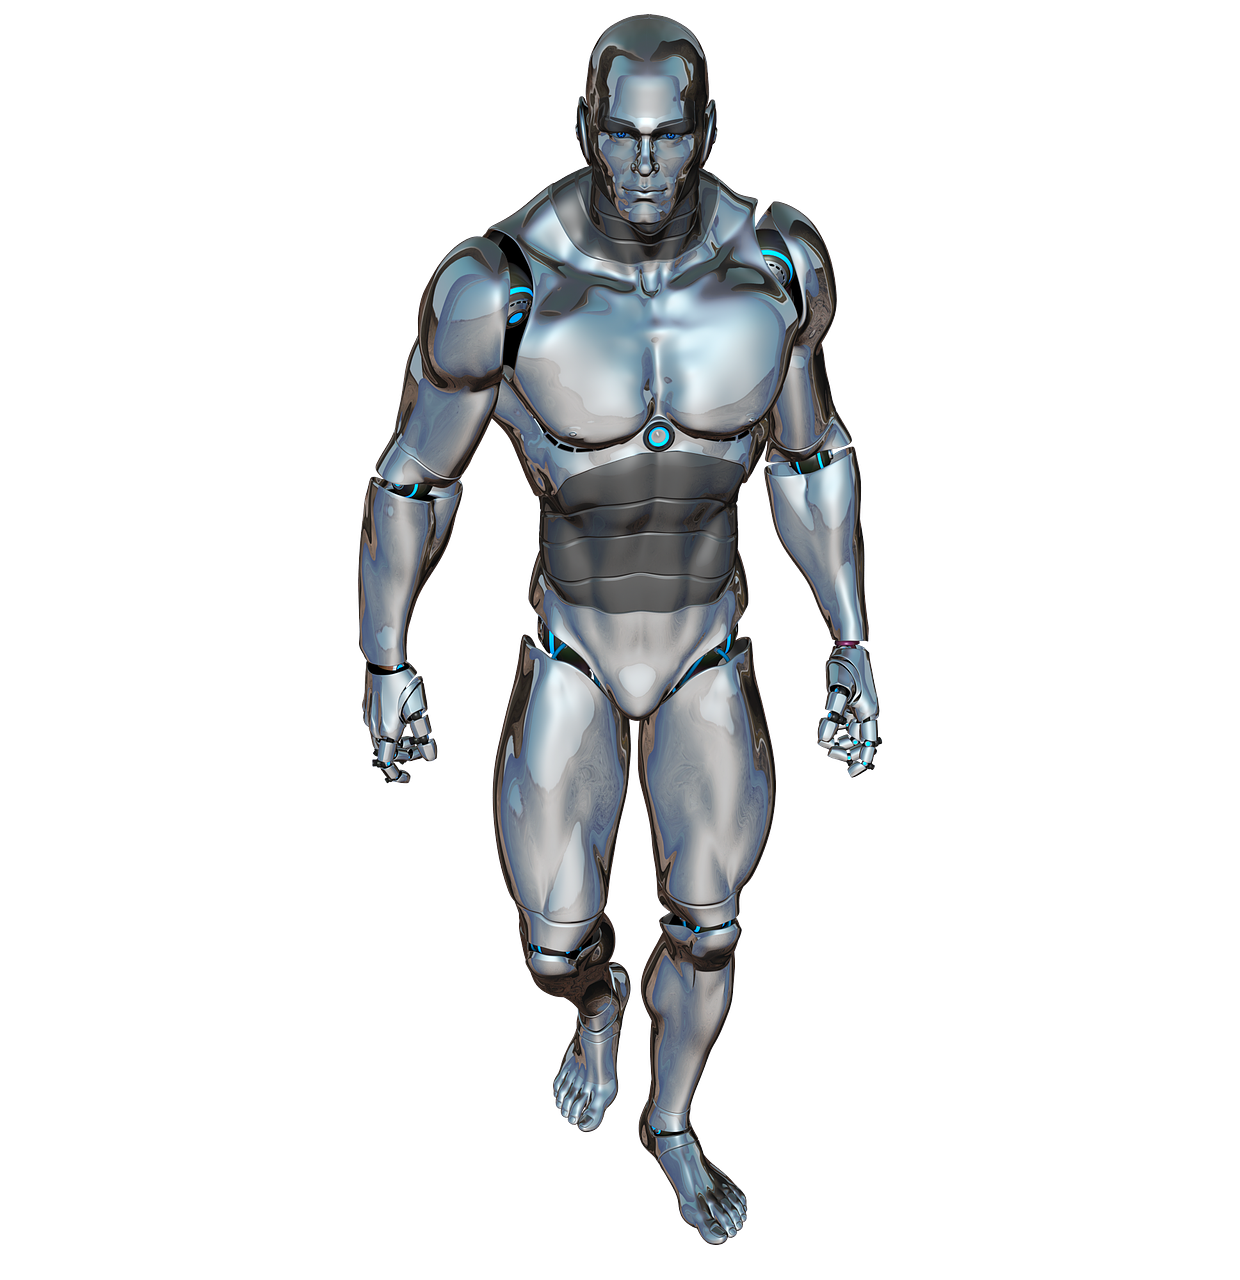 Vyras, Vaikščioti, Robotas, Cyborg, Android, Robotų Technika, Ateitis, Dirbtinis Intelektas, Mėlynas, Sidabras